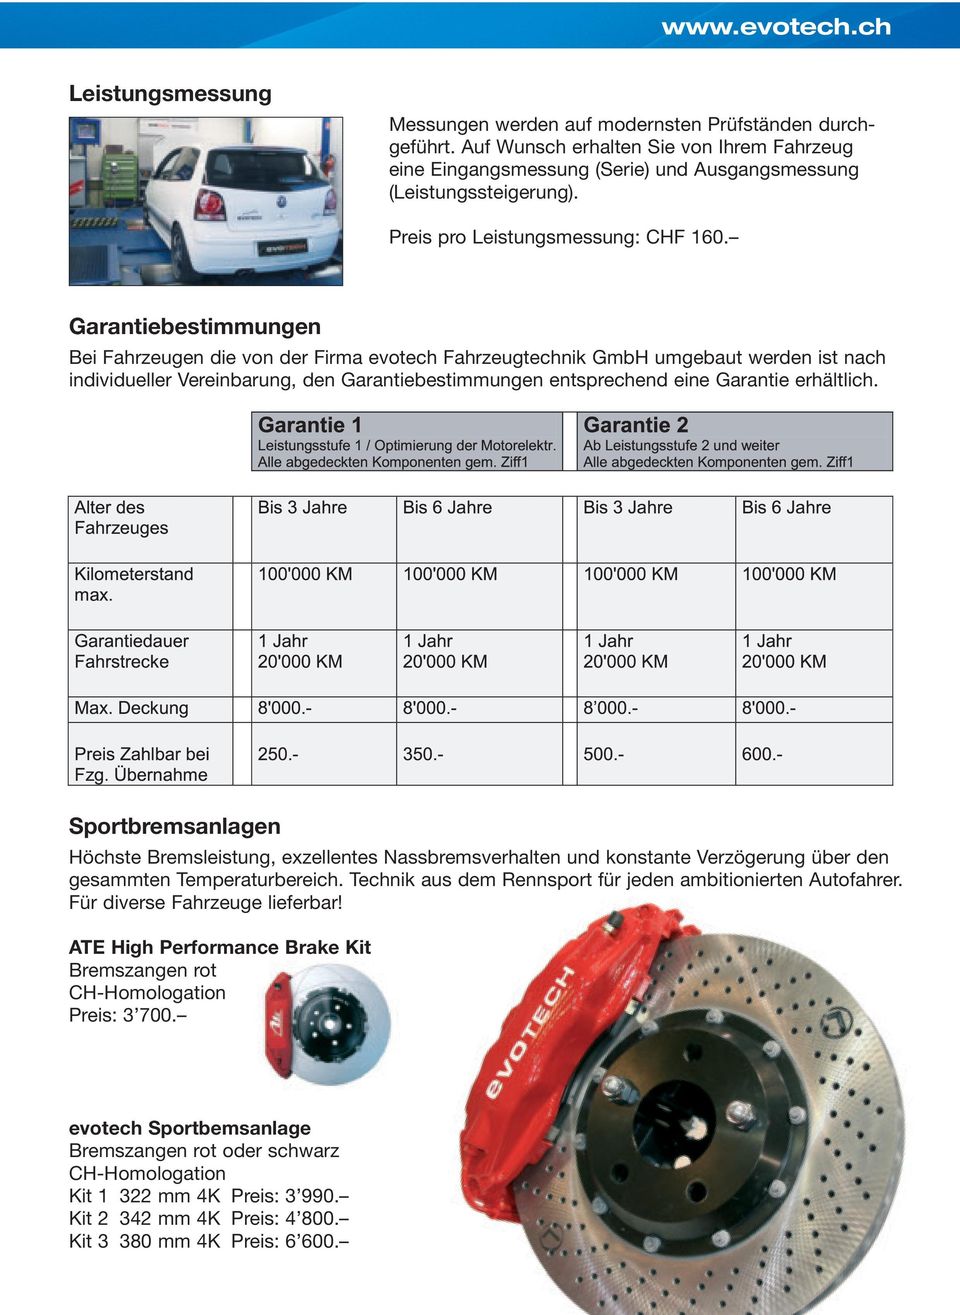 Garantiebestimmungen Bei Fahrzeugen die von der Firma evotech Fahrzeugtechnik GmbH umgebaut werden ist nach individueller Vereinbarung, den Garantiebestimmungen entsprechend eine Garantie erhältlich.